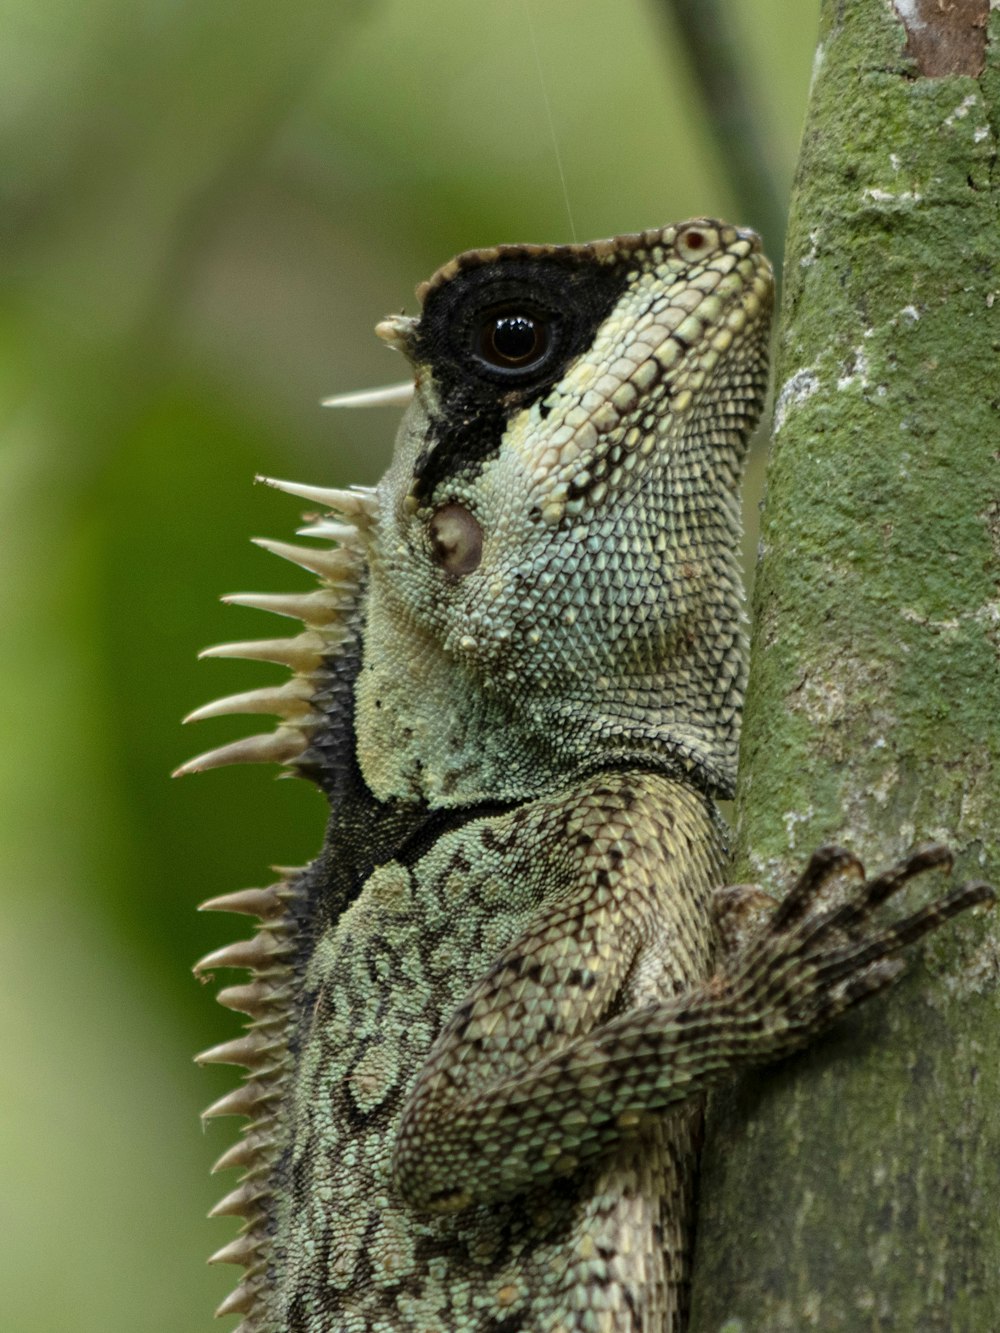 um close up de um lagarto em uma árvore